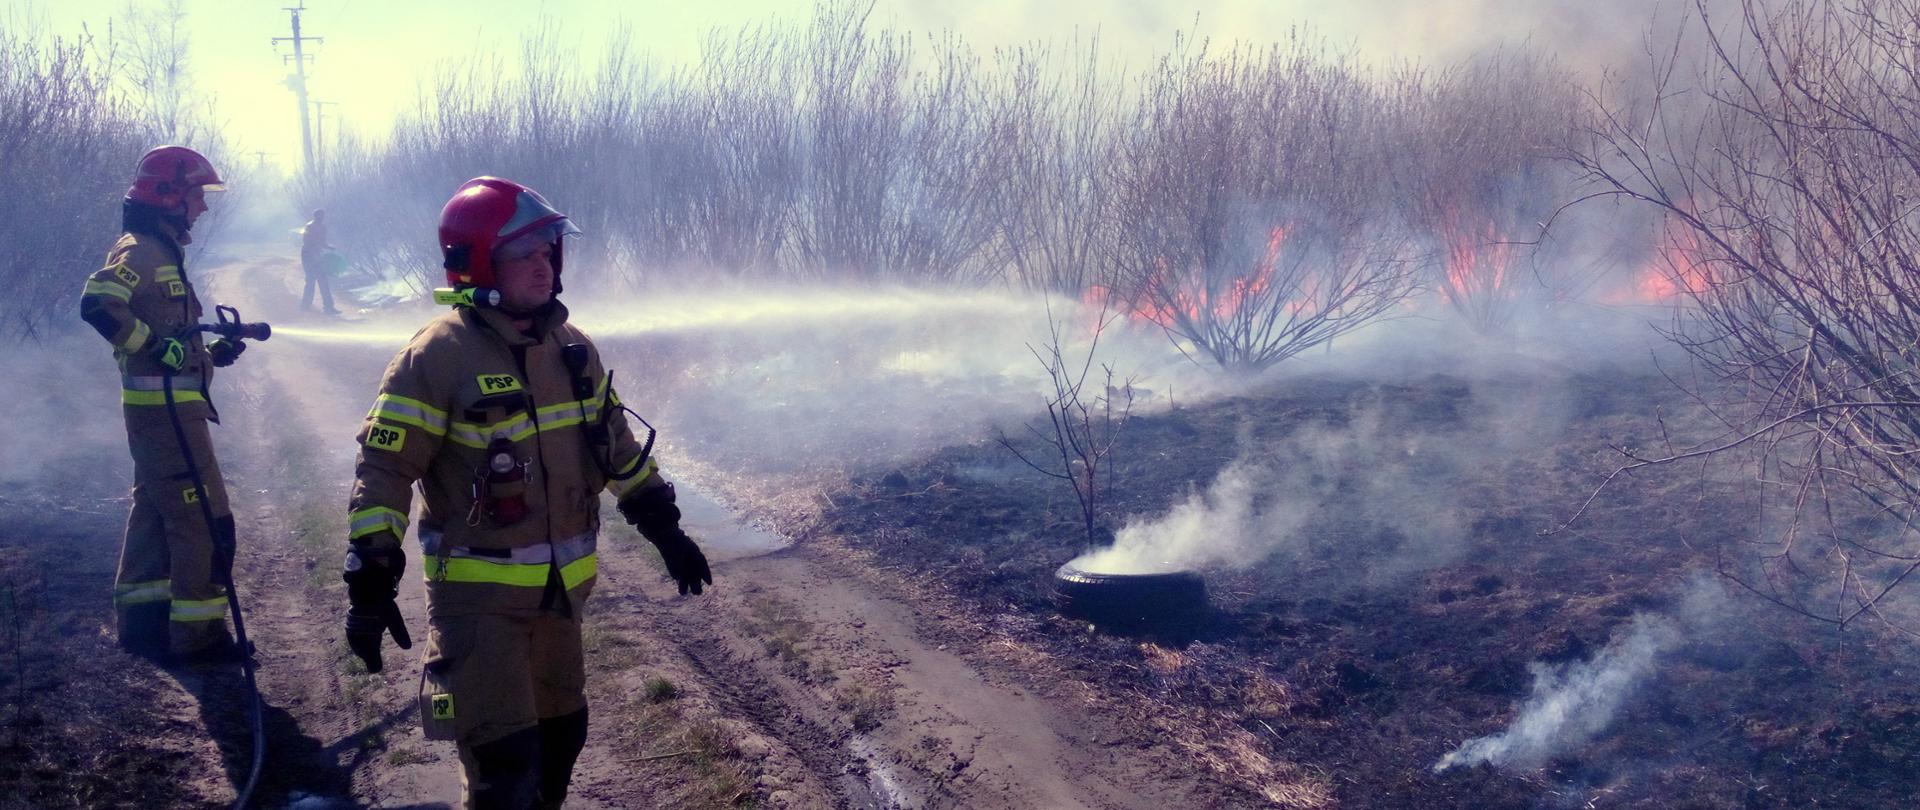 na zdjęciu widać strażaków gaszących pożar nieużytków w pobliżu młodych drzewek